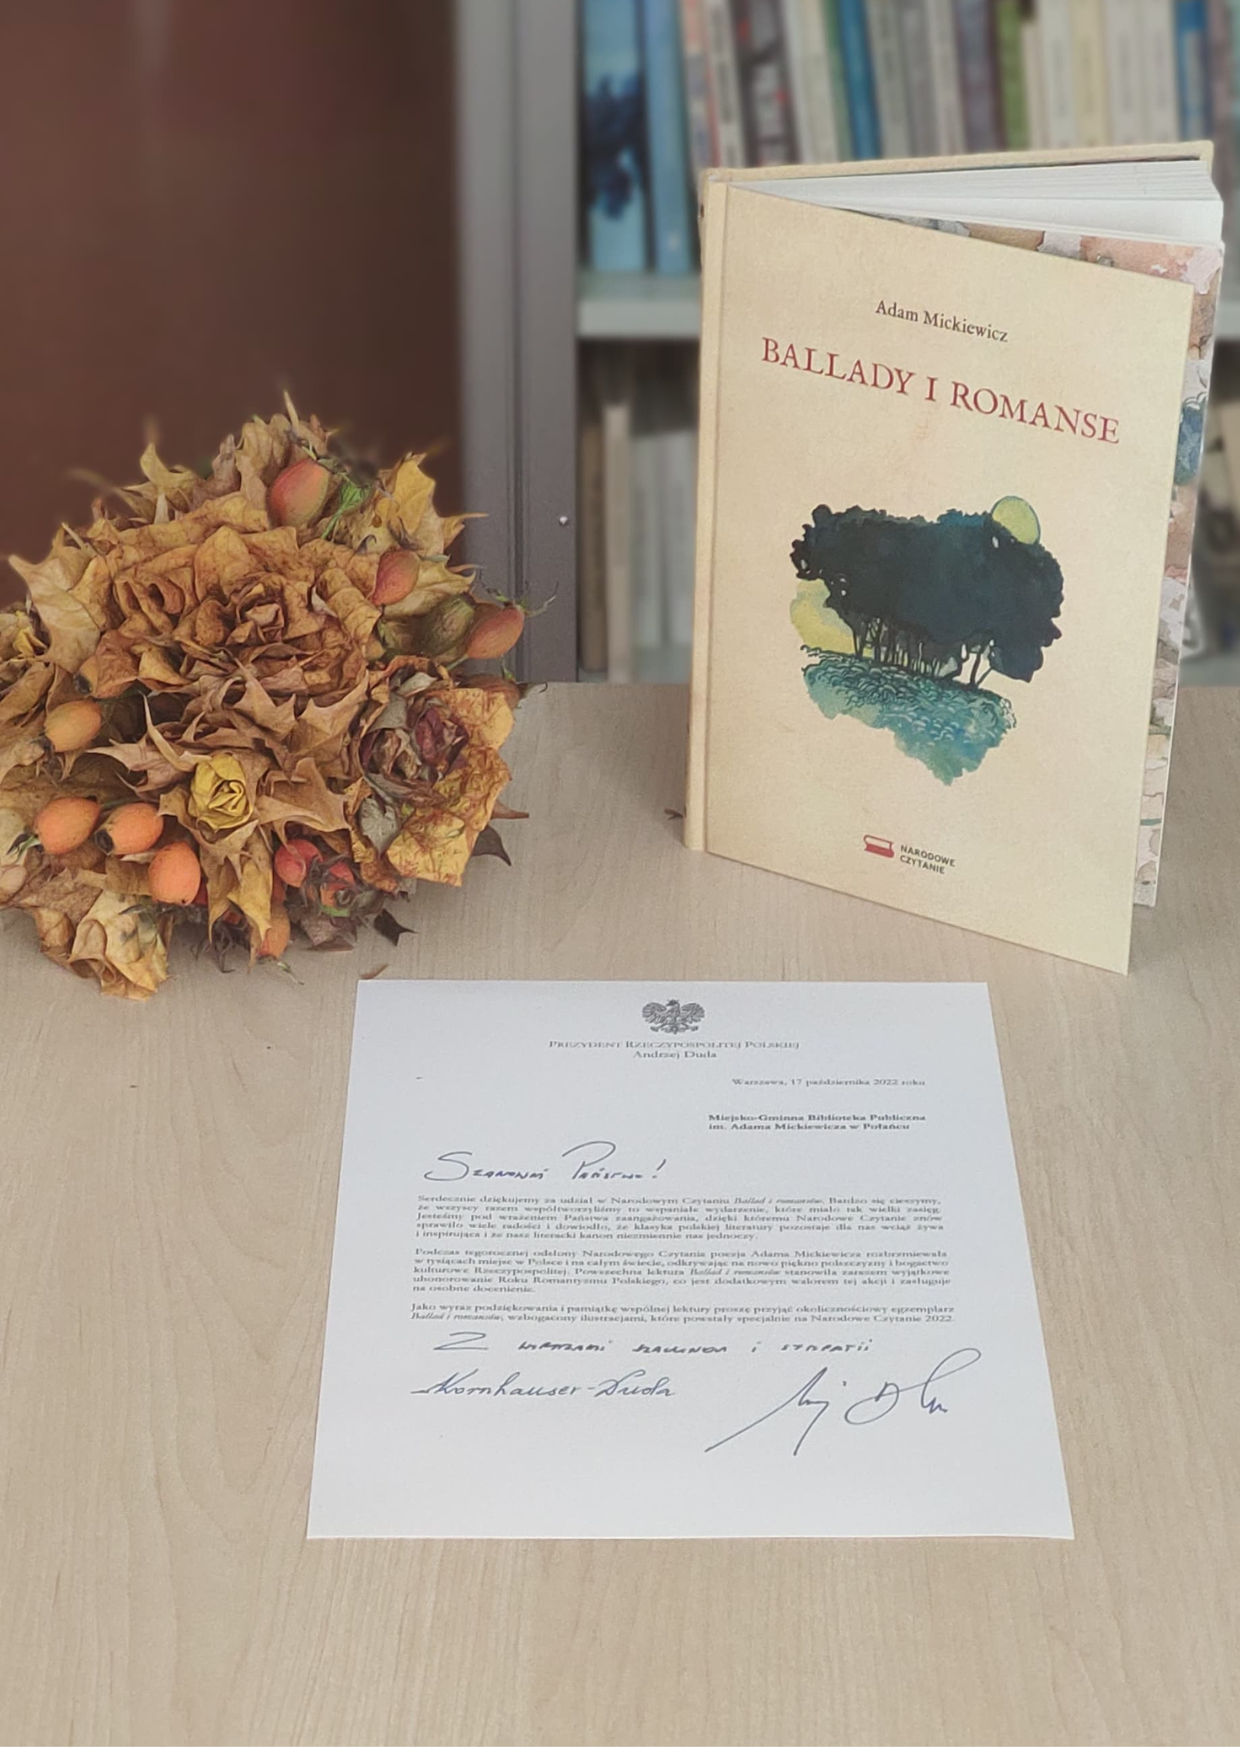 Zdjęcie kolorowe, książka Ballady i romanse A. Mickiewicza, wydanie pamiątkowe i list z podziękowaniami od PAry Prezydenckiej RP